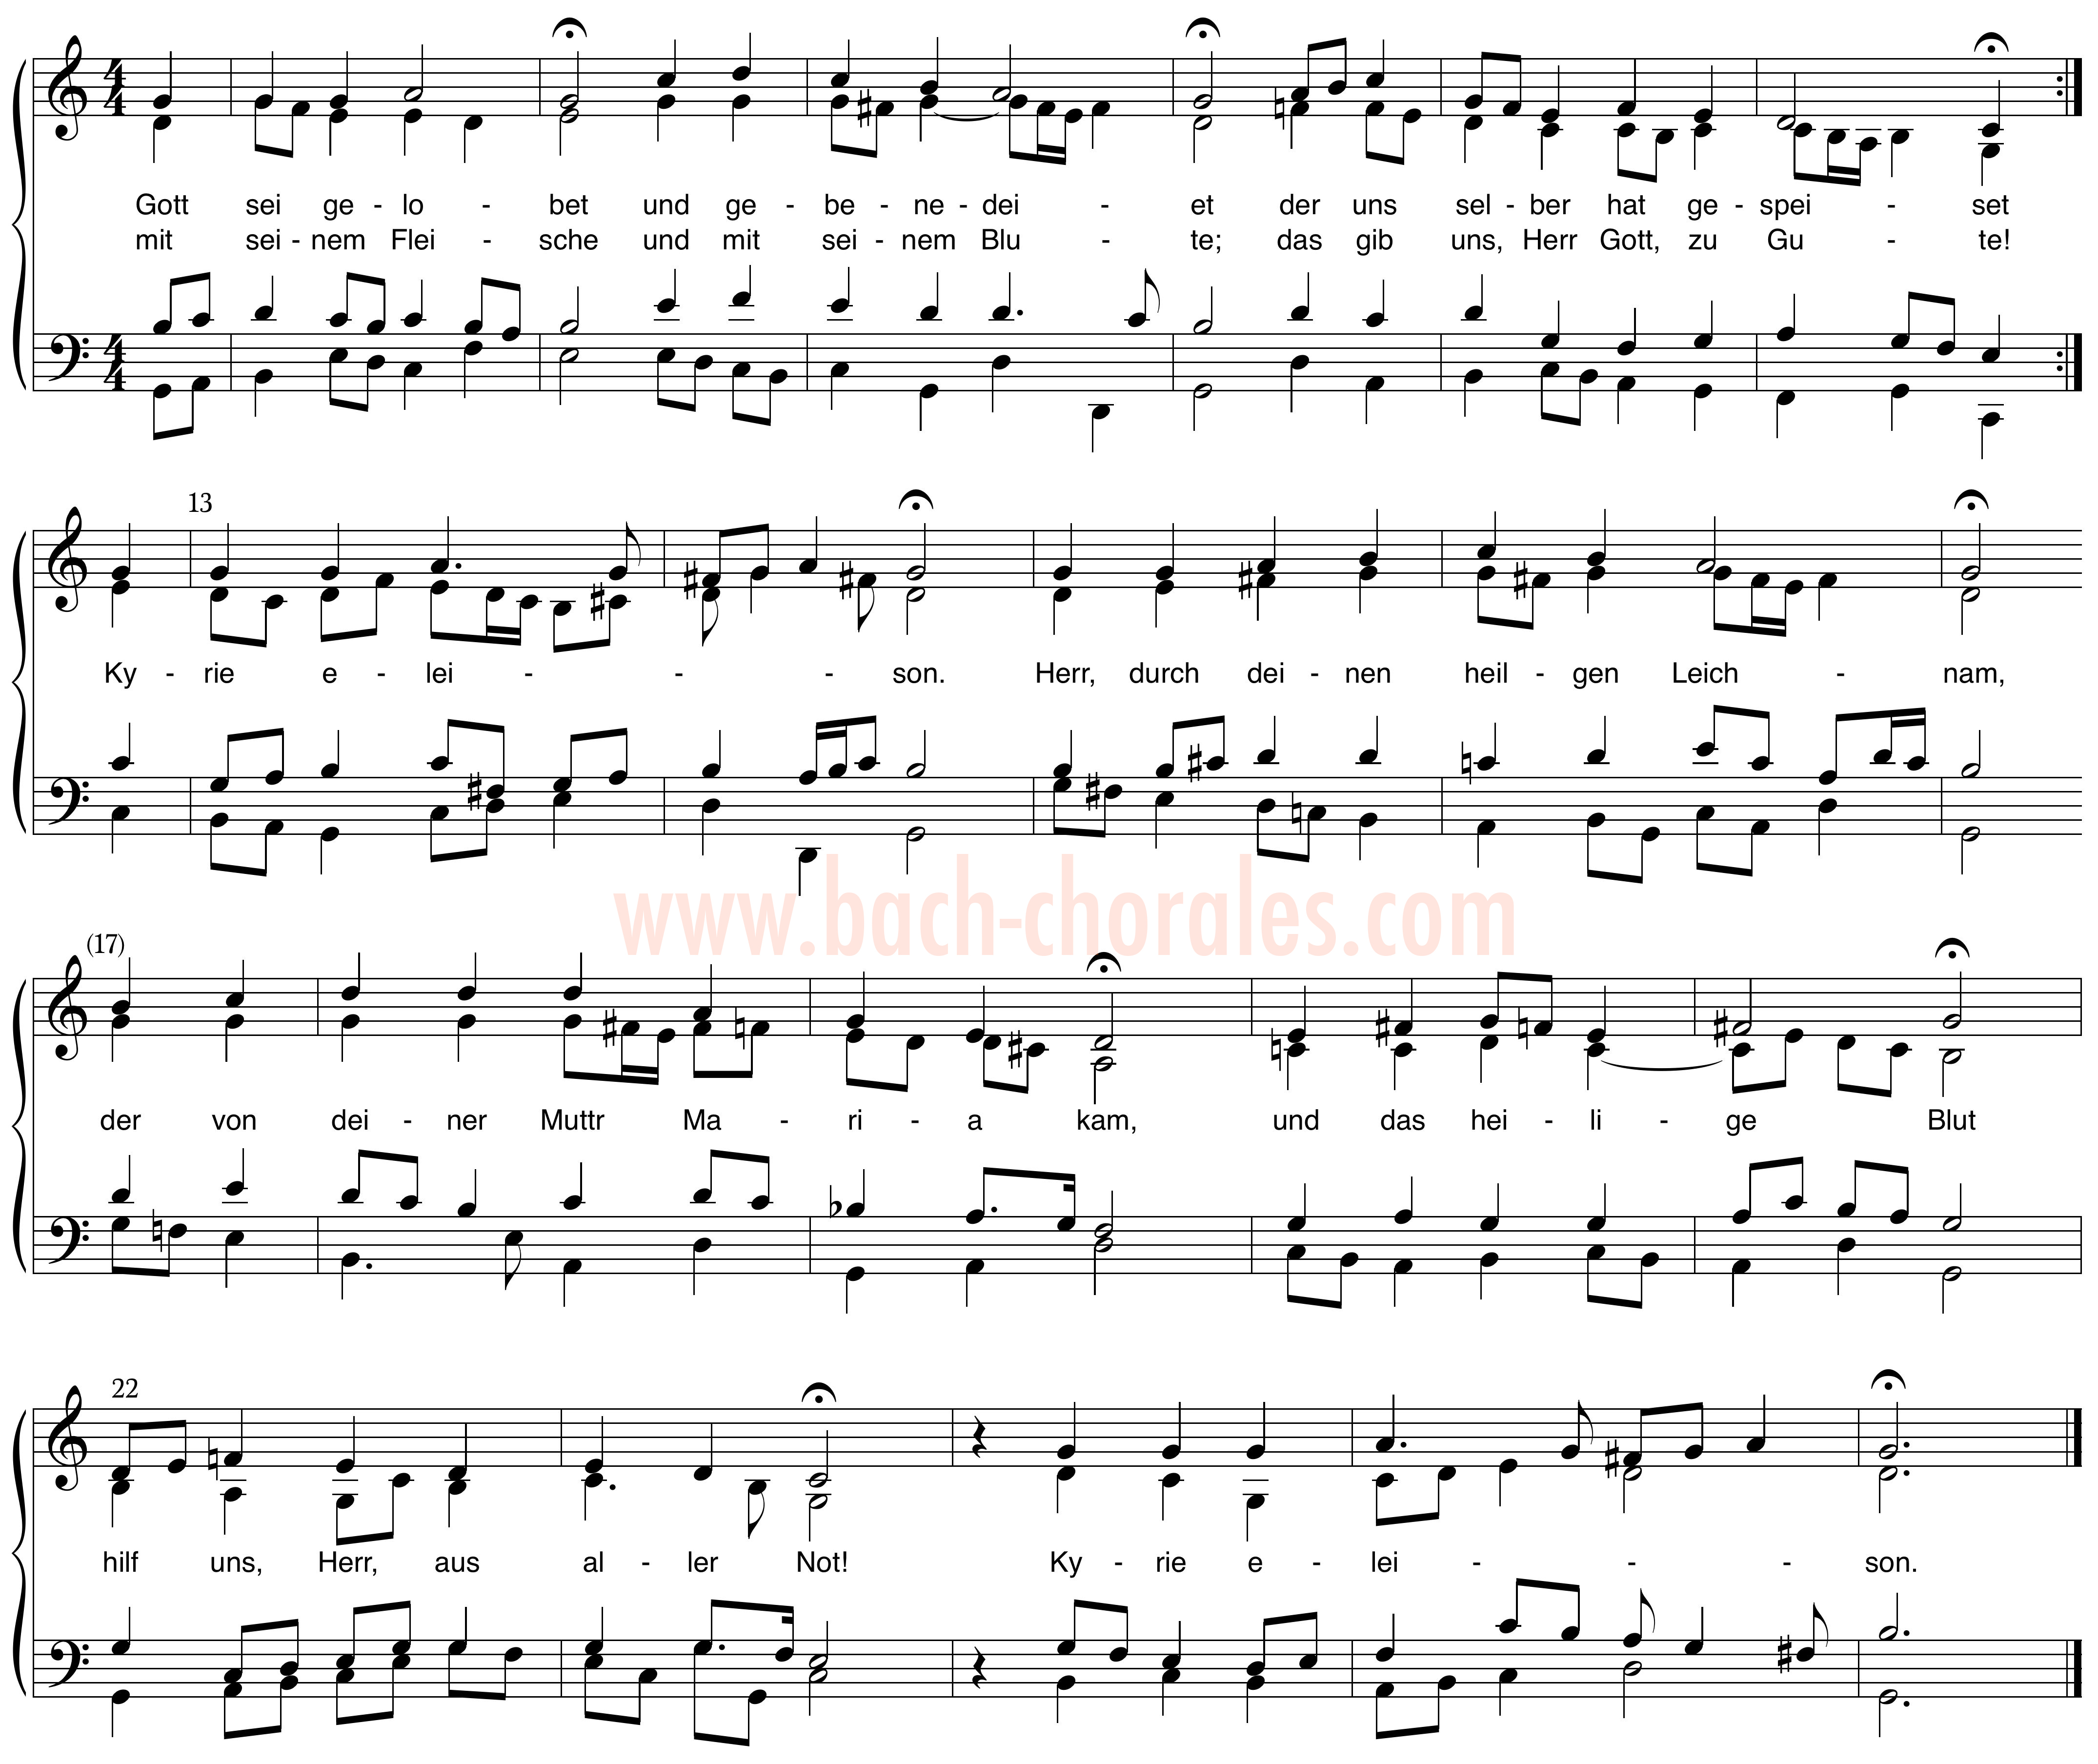 notenbeeld BWV 322 op https://www.bach-chorales.com/